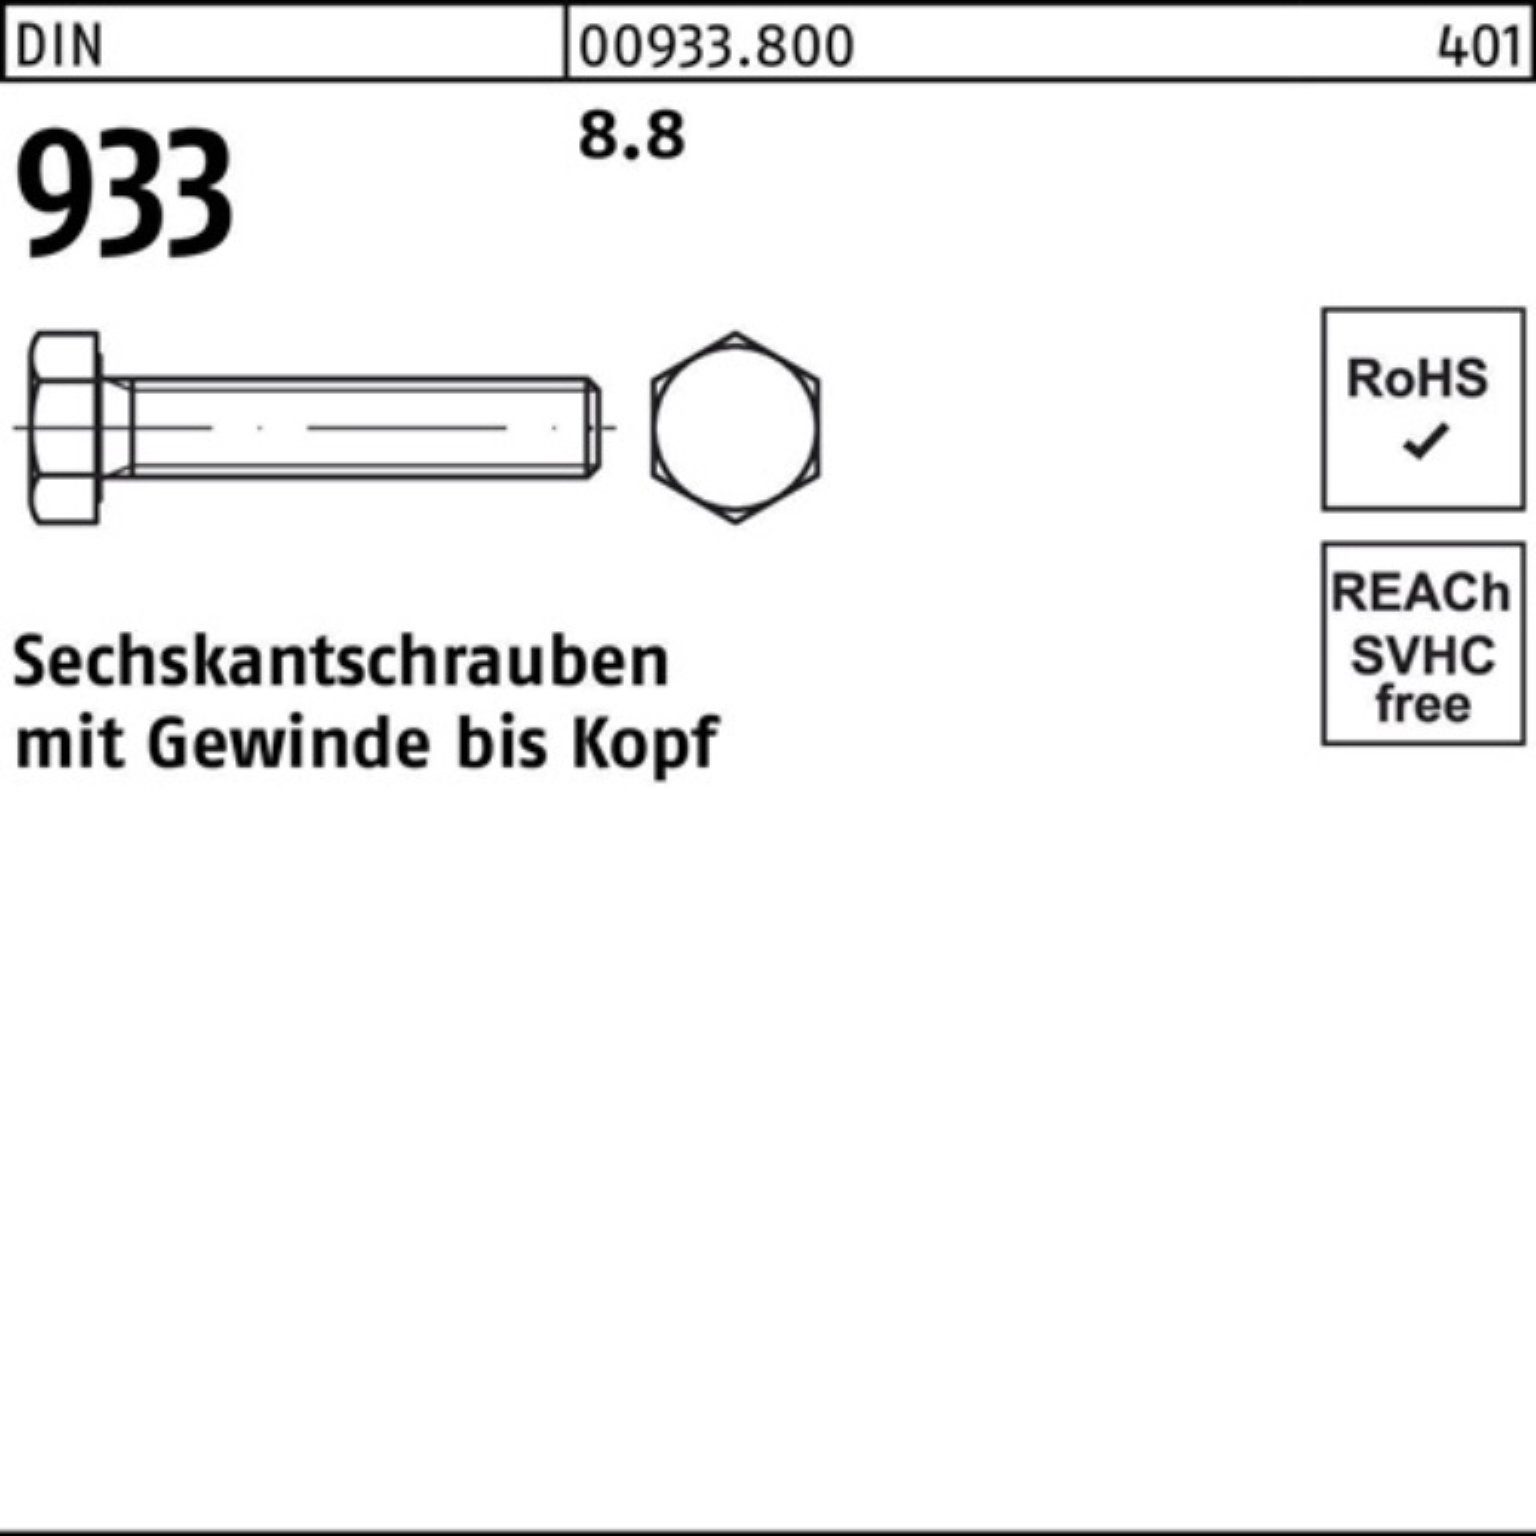 Sechskantschraube 933 DIN VG M12x Pack 25 8.8 DIN 200 Stück 100er 933 Sechskantschraube Reyher